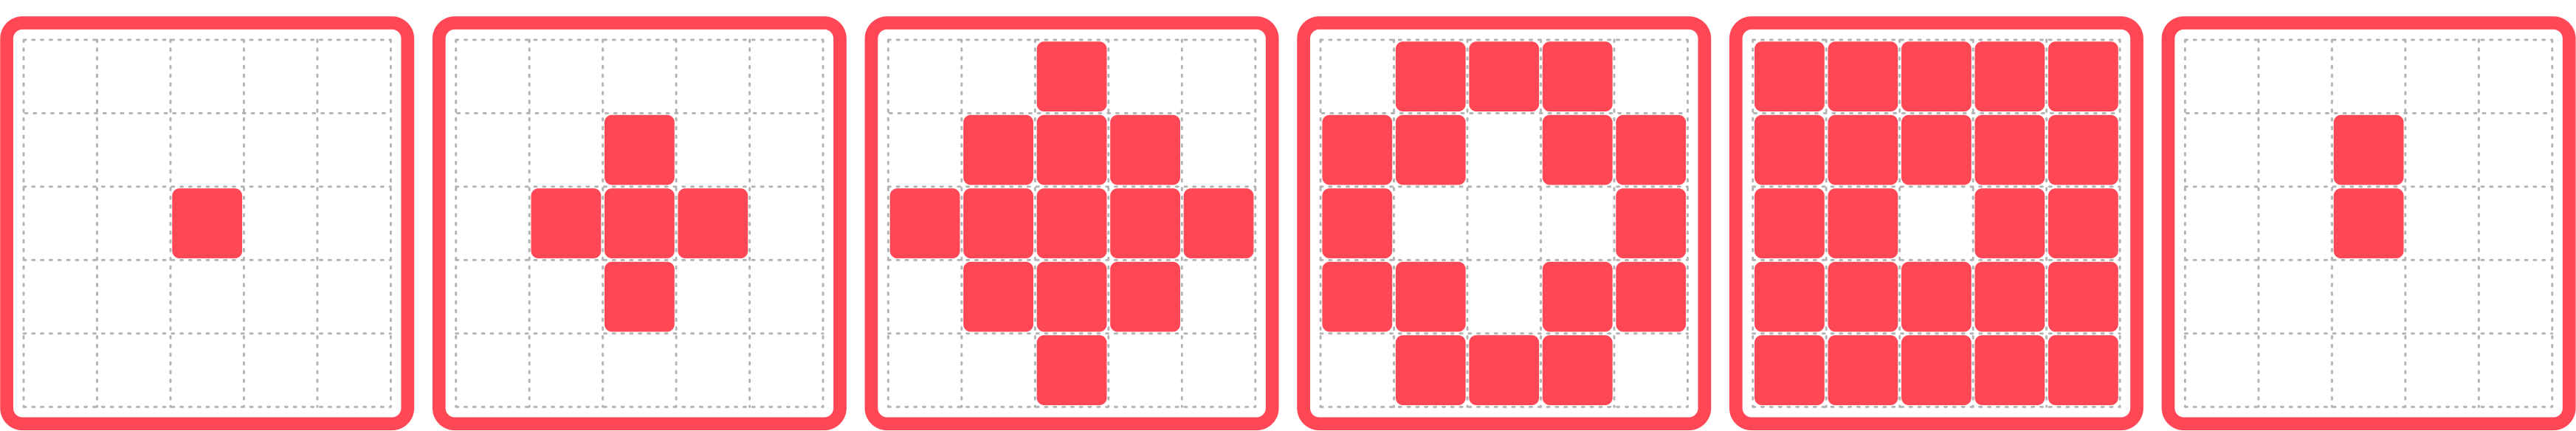 Plansze składają się z pól ułożonych w pięciu rzędach i w pięciu kolumnach. Pierwsza plansza przedstawia sytuację w której pierwsza kolumna od lewej strony zawiera pięć pól zaznaczonych kolorem czerwony. Na drugiej planszy kolumny pierwsza i druga licząc od lewej strony zamalowane są na czerwono. Trzecia plansza to sytuacja w której druga i trzecia kolumna zawiera komórki zamalowane na czerwono.